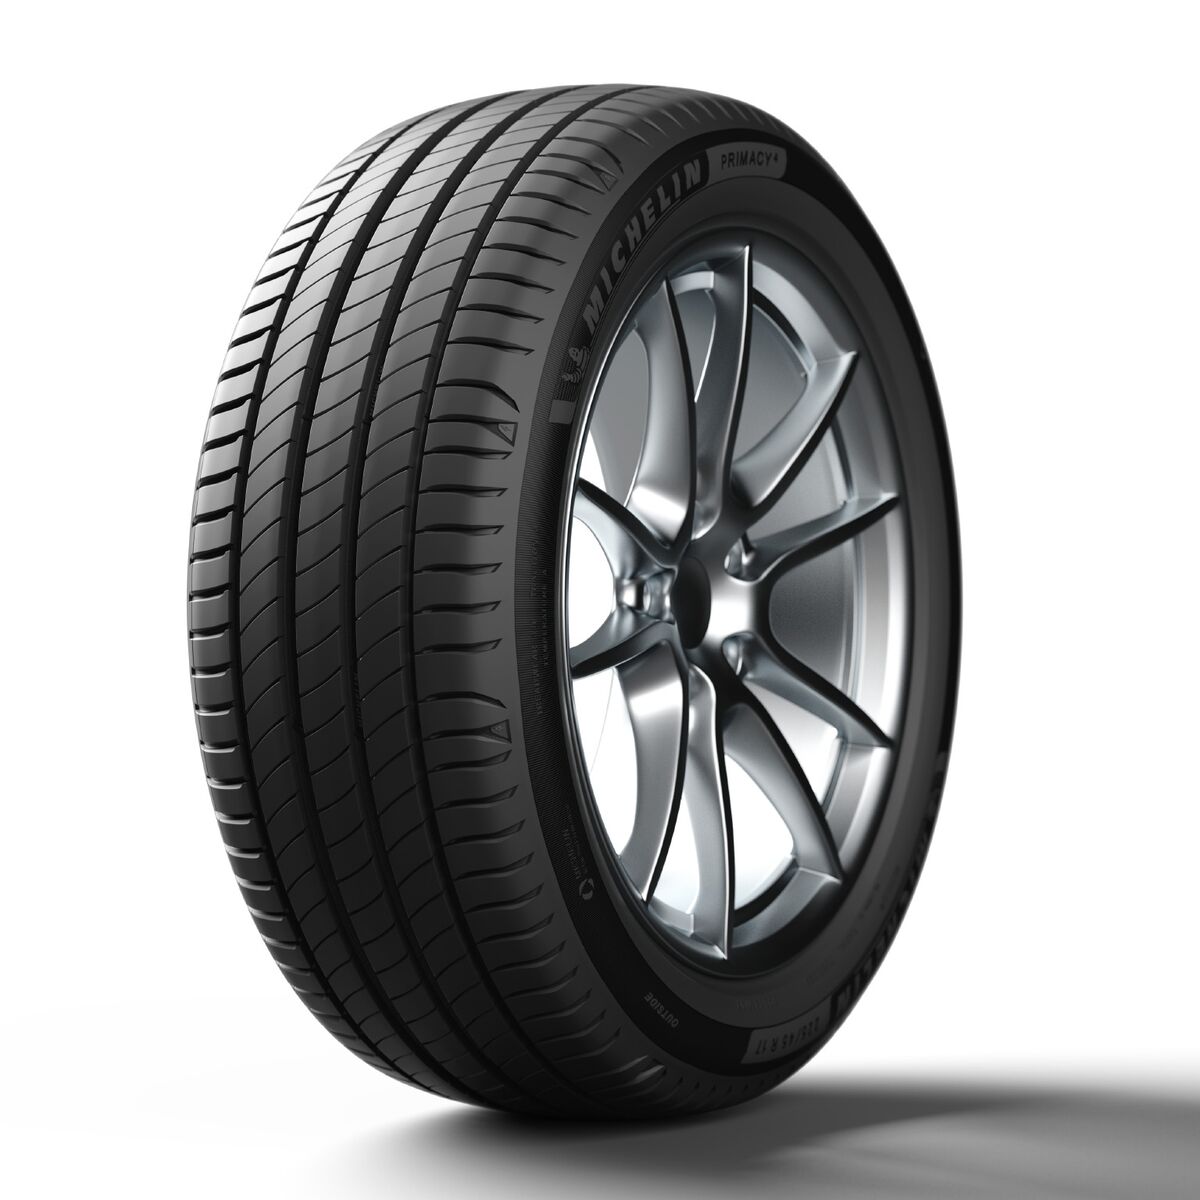 Neumático Michelin Primacy 4 225/45 R17 91 Y Normal (Verano)